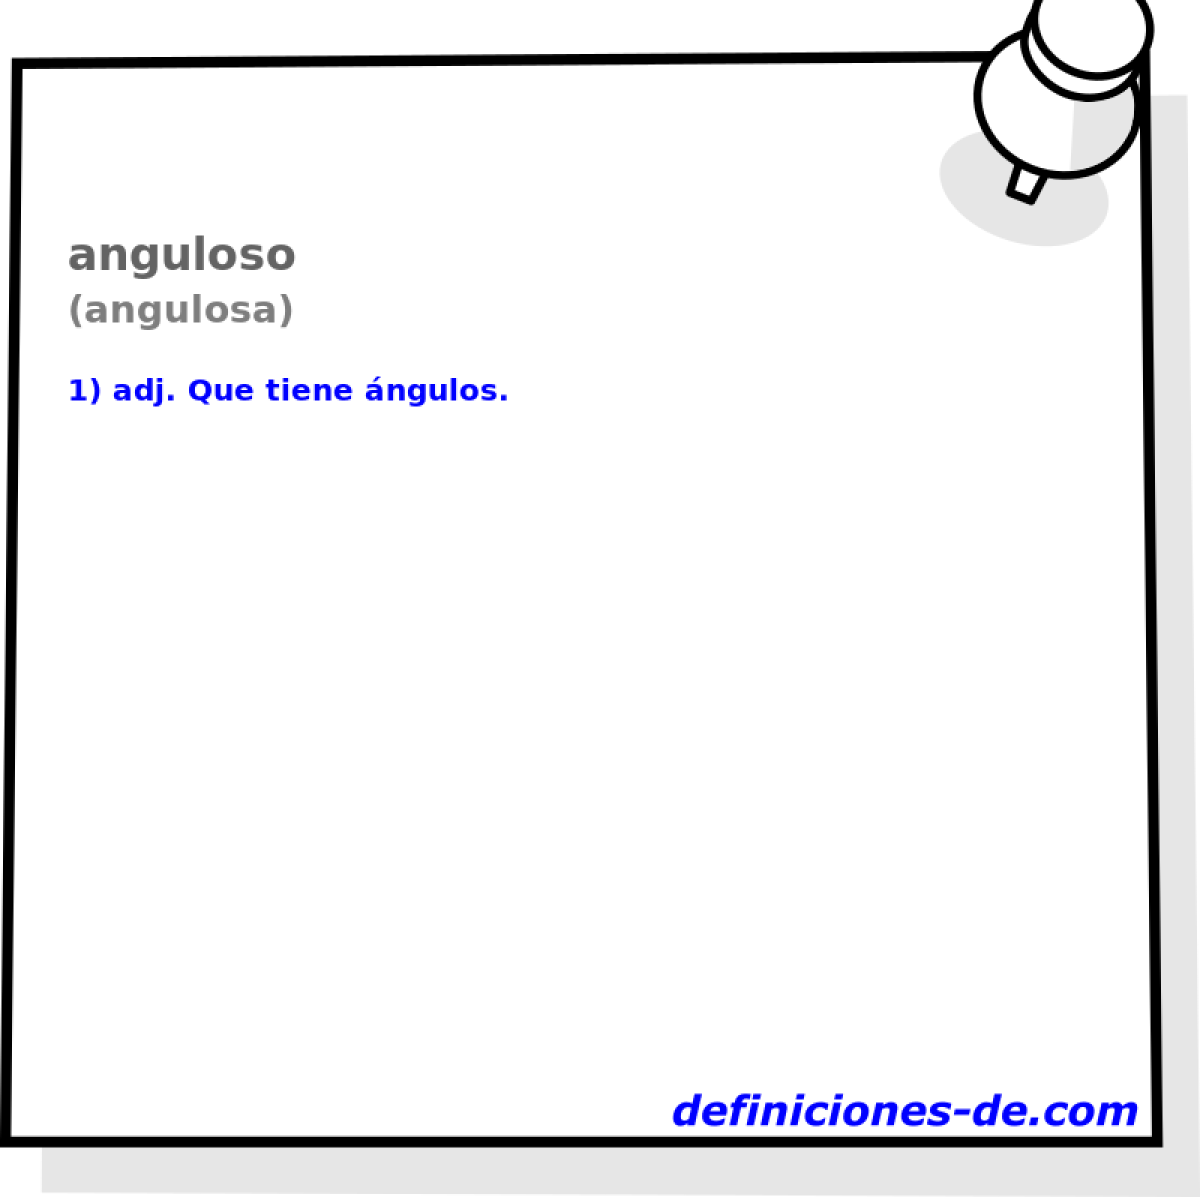 anguloso (angulosa)